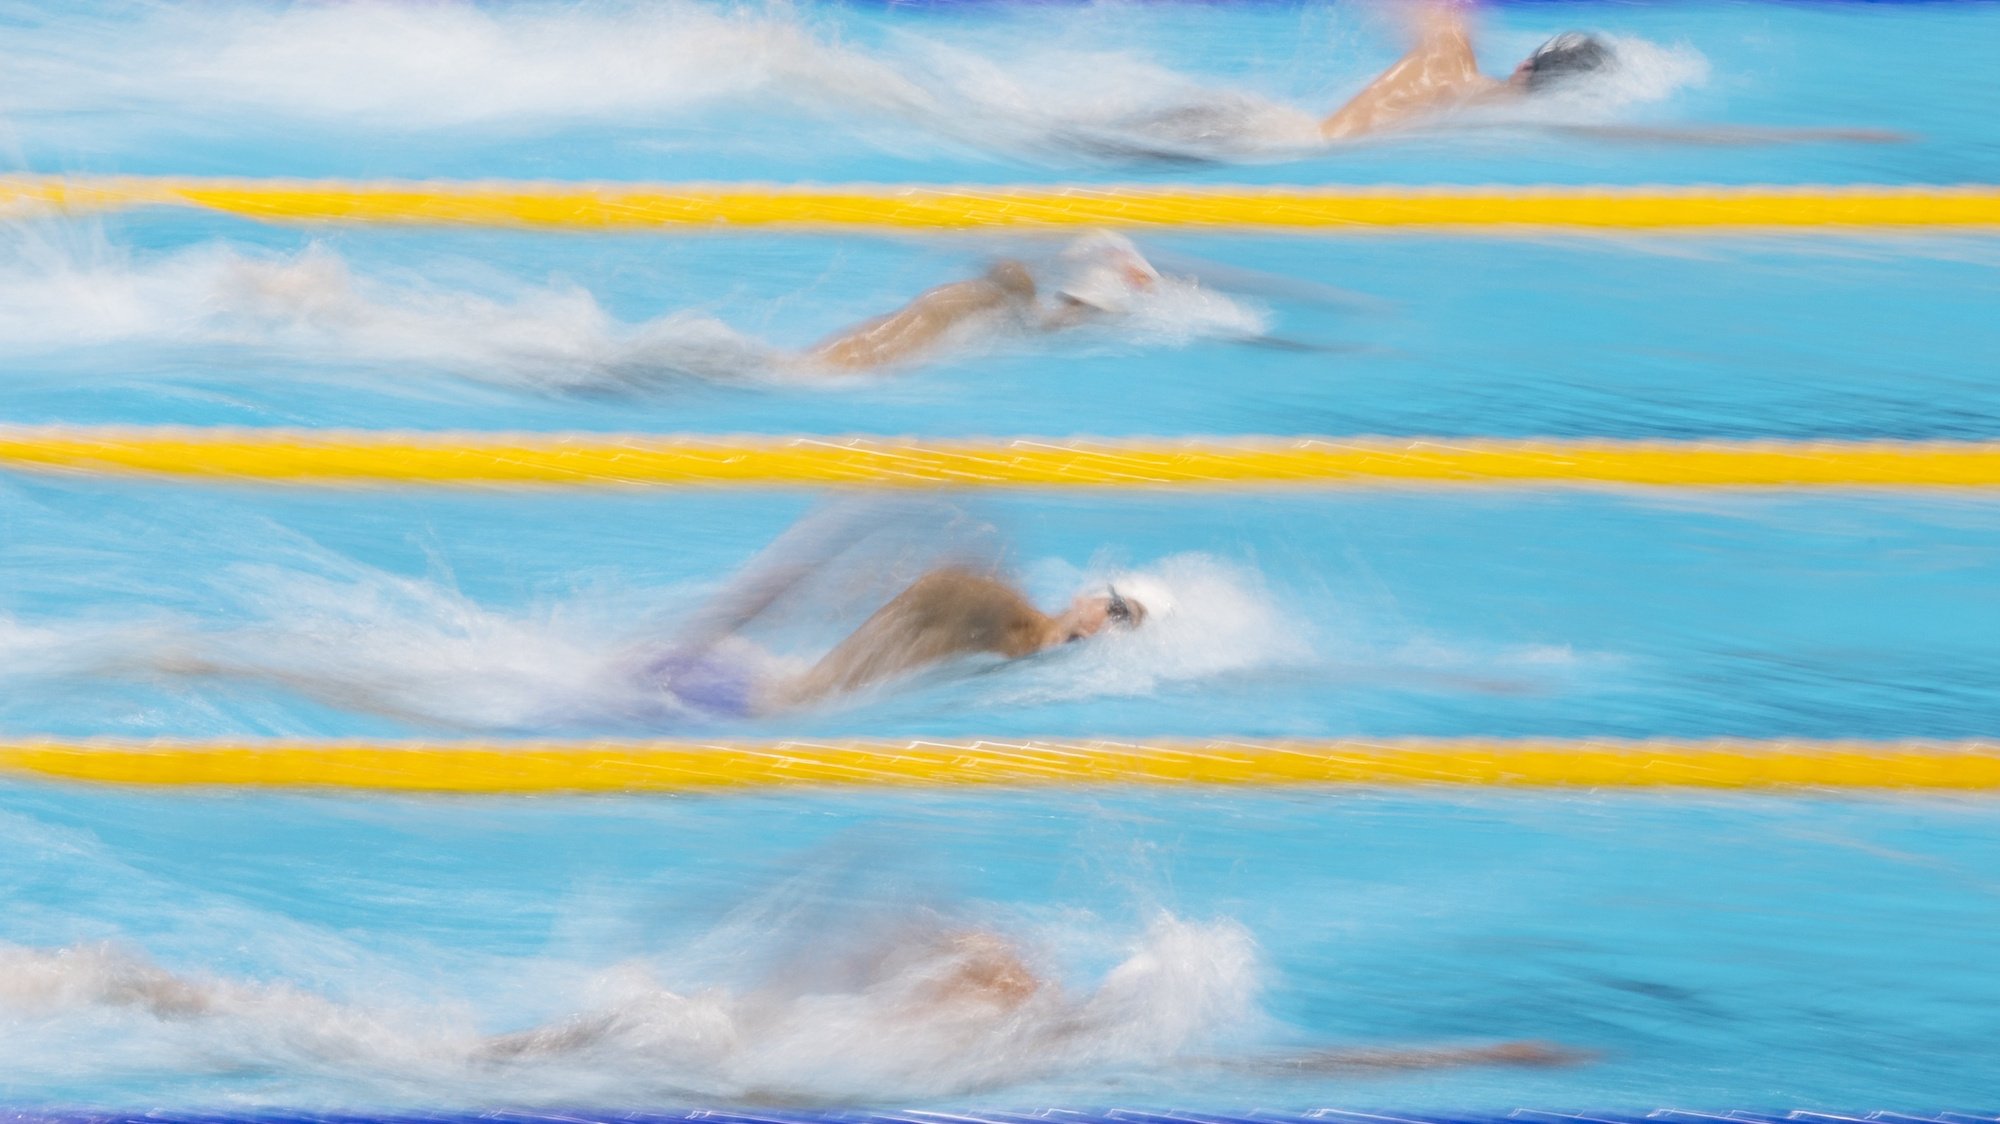 O nadador português José Lopes (terceira pista a partir de cima) em ação durante a prova de qualificação dos 800 metros livres dos Jogos Olímpicos Tóquio2020, Japão, 27 de julho de 2021. JOSÉ COELHO/LUSA